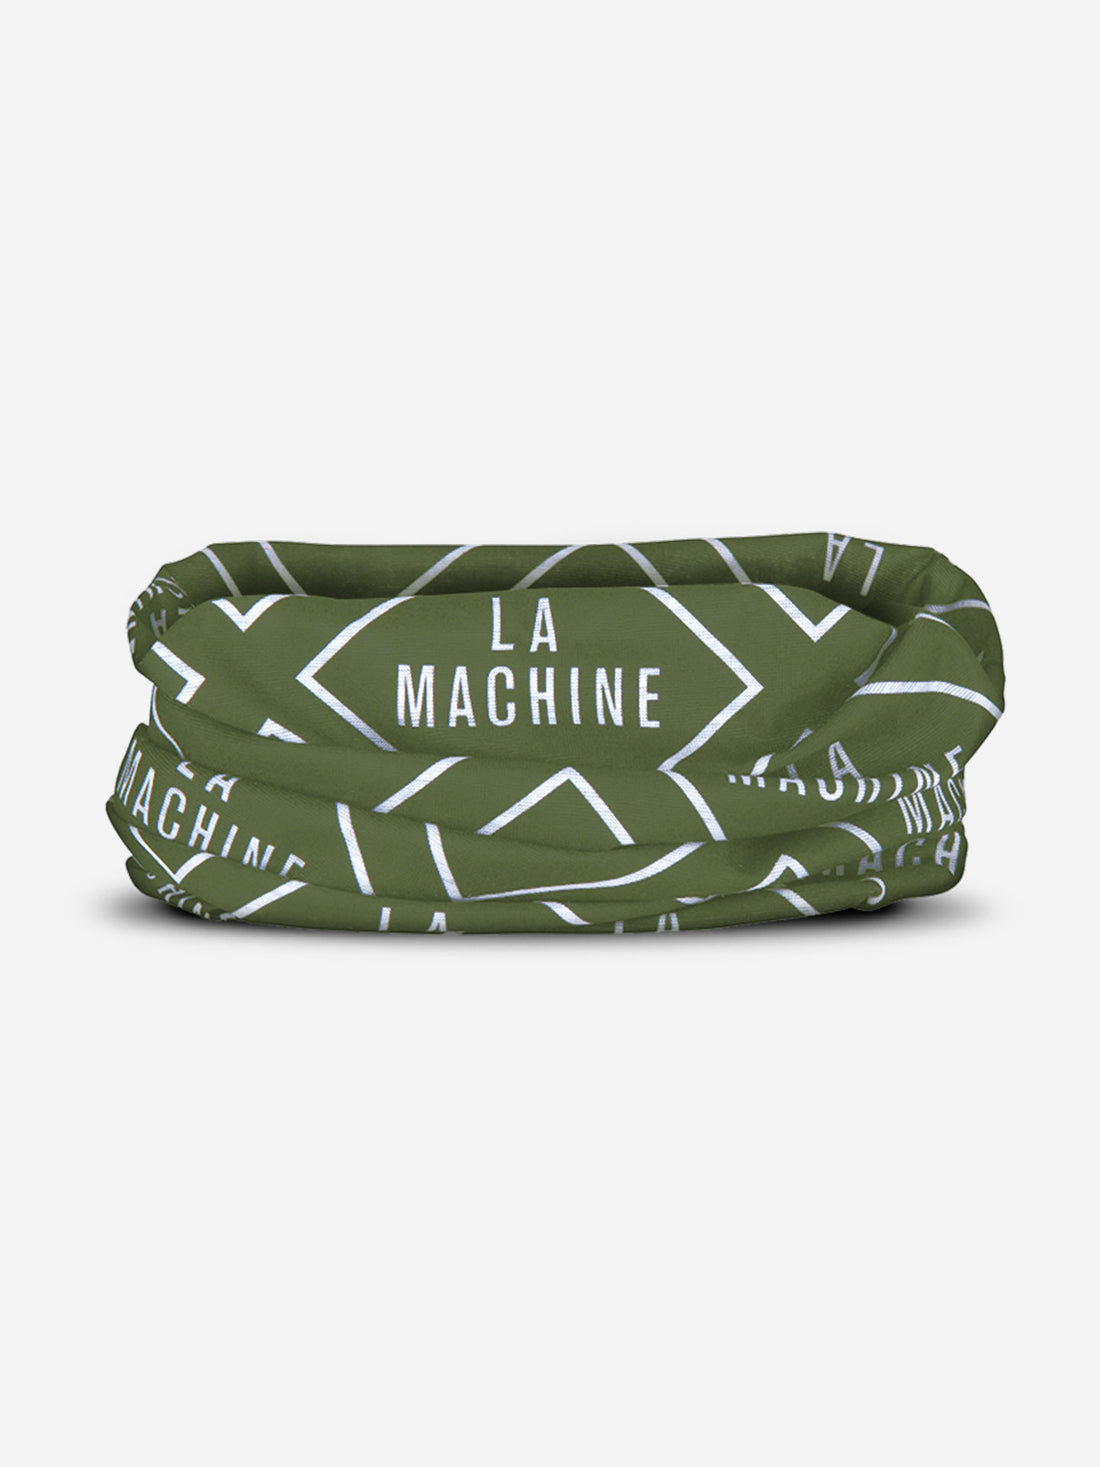 La Machine Neck Warmer – Green -  La Machine Cycle Club.